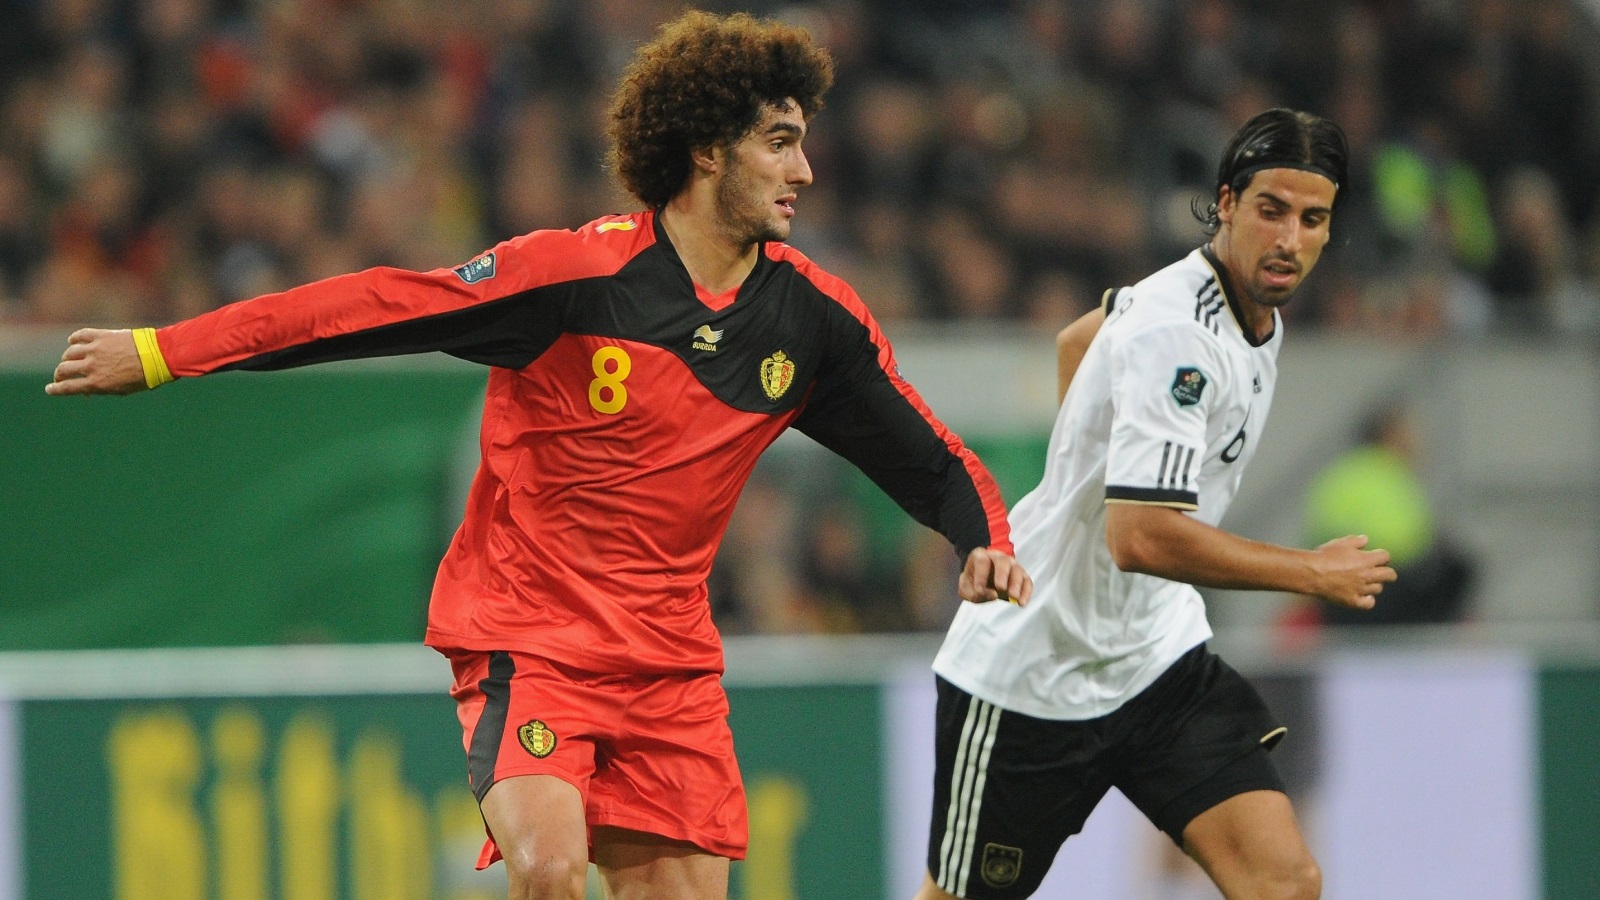 مشاركة كل من سامي خضيرة ذو الأصل التونسي، ومروان فلايني ذو الأصل المغربي في المباراة التي جمعت بين المنتخب الألماني والبلجيكي